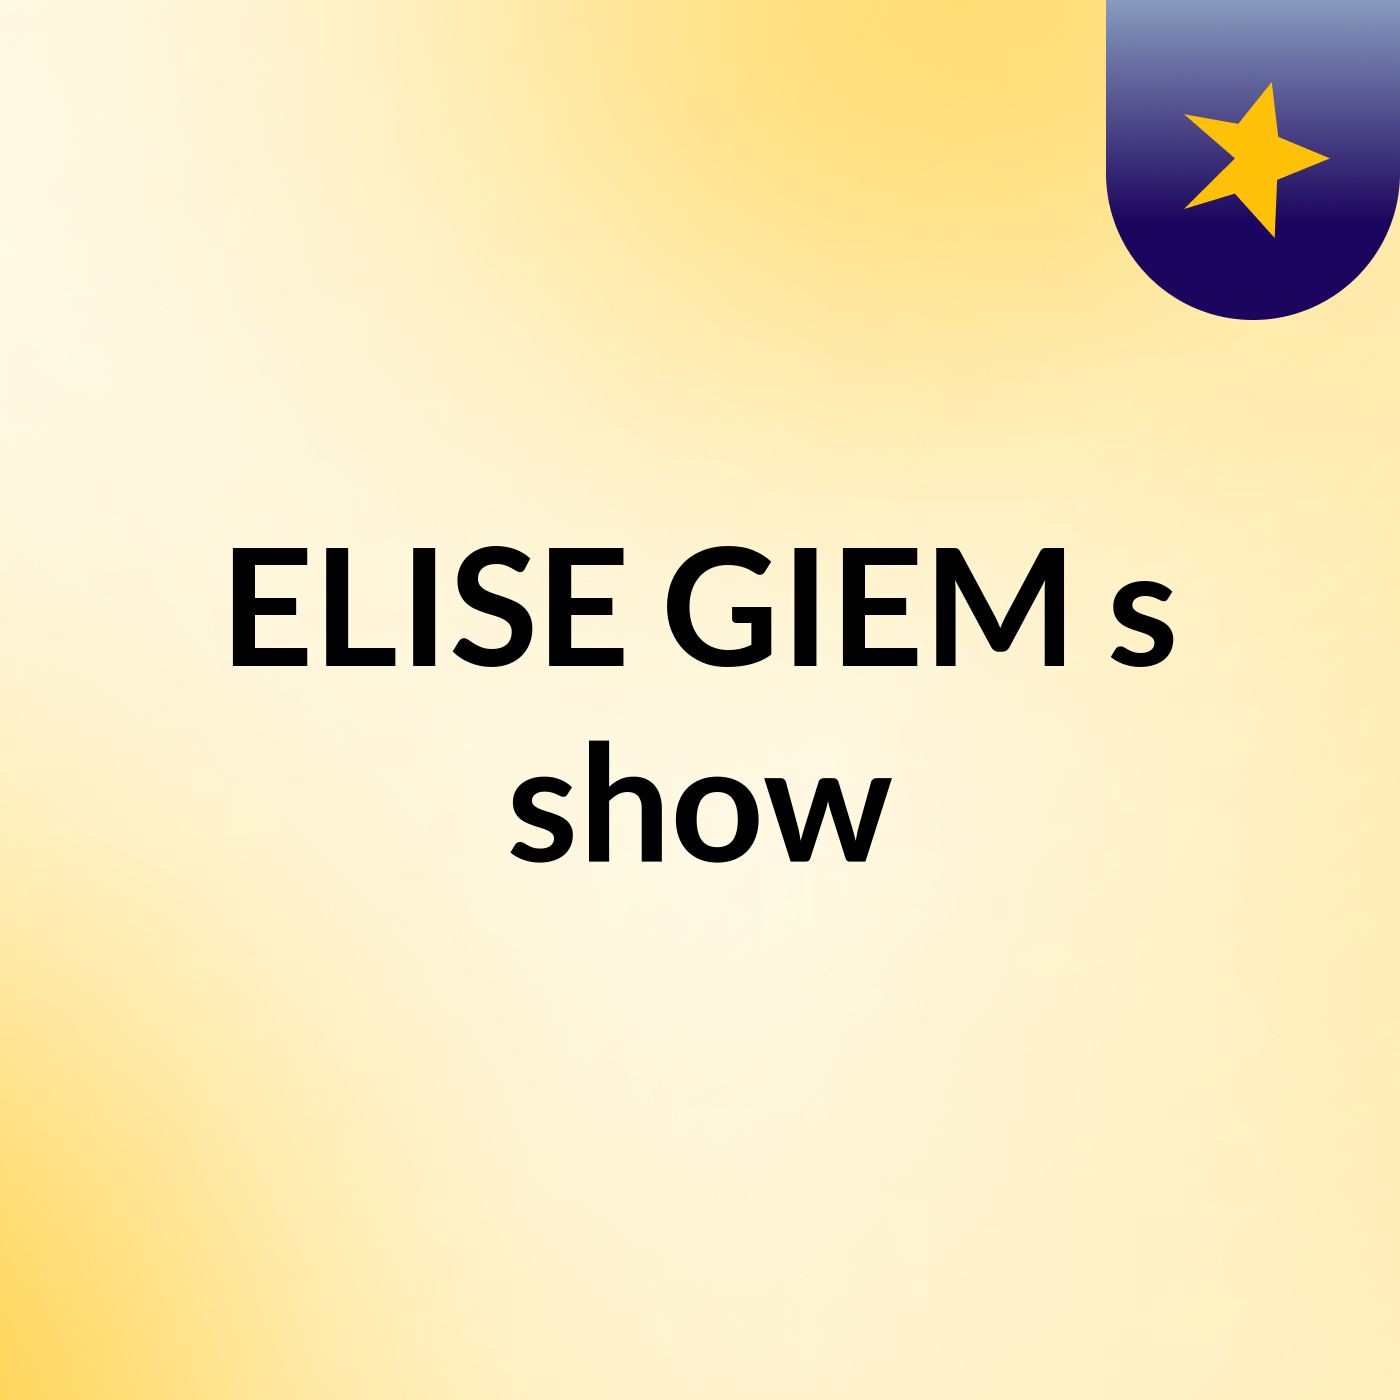 Episode 4 - ELISE GIEM's show